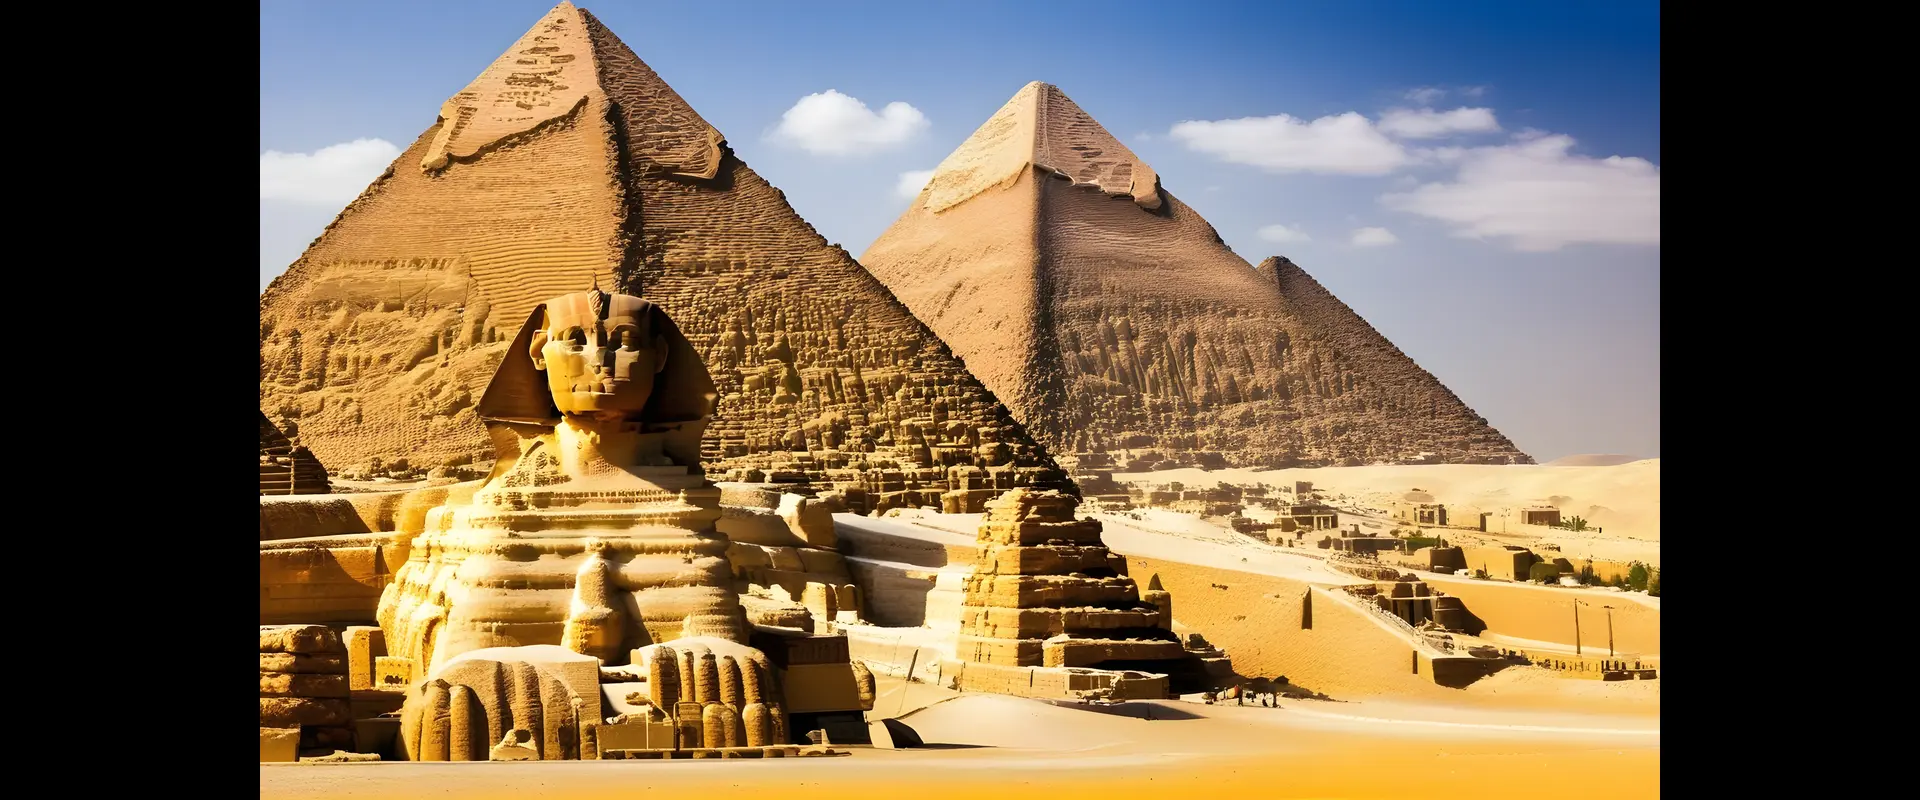 Dicas de viagem para o Egito